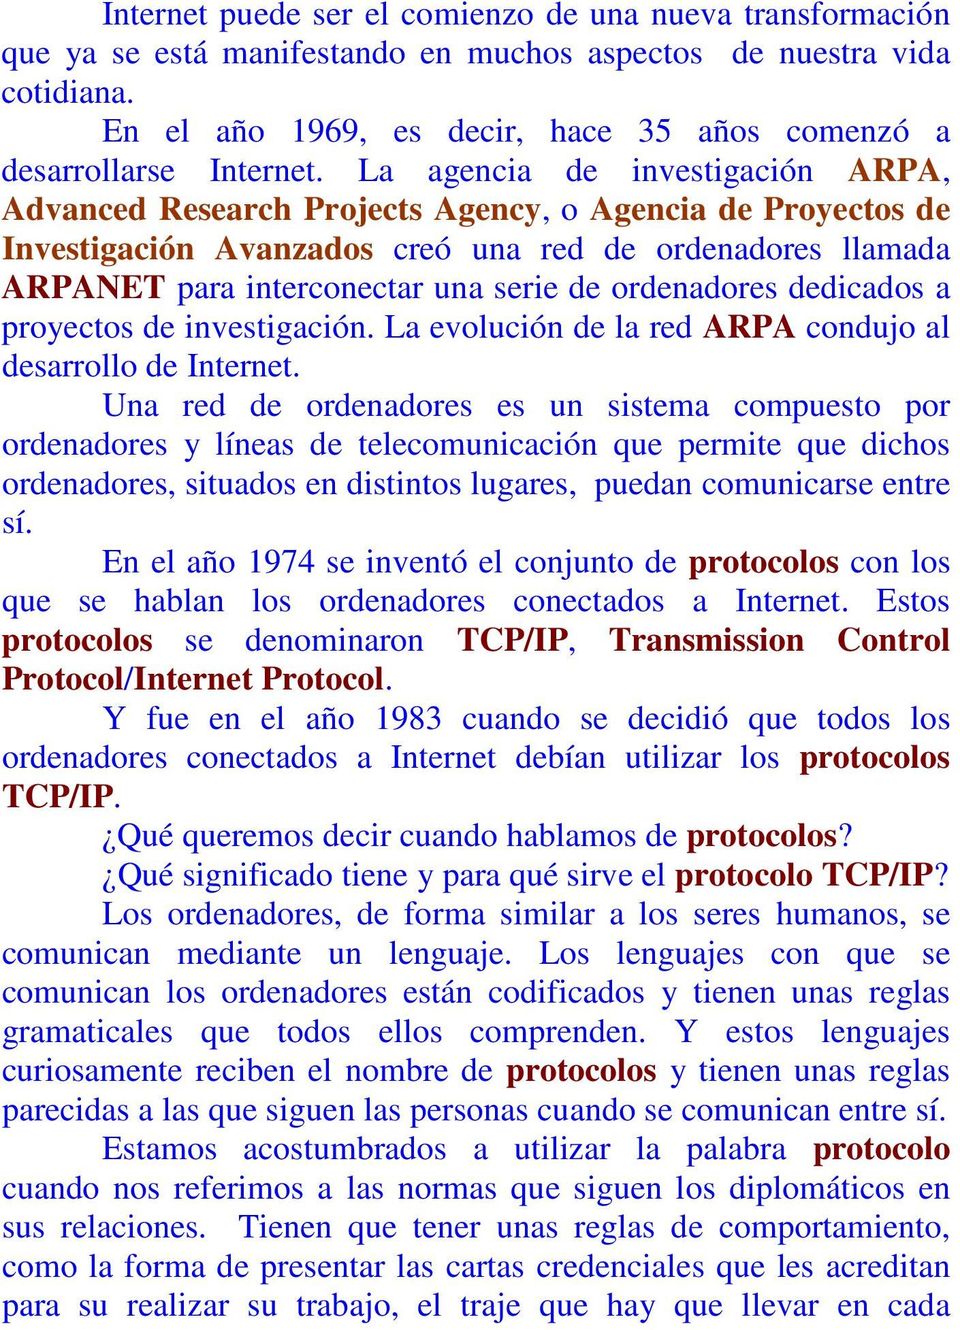 La agencia de investigación ARPA, Advanced Research Projects Agency, o Agencia de Proyectos de Investigación Avanzados creó una red de ordenadores llamada ARPANET para interconectar una serie de